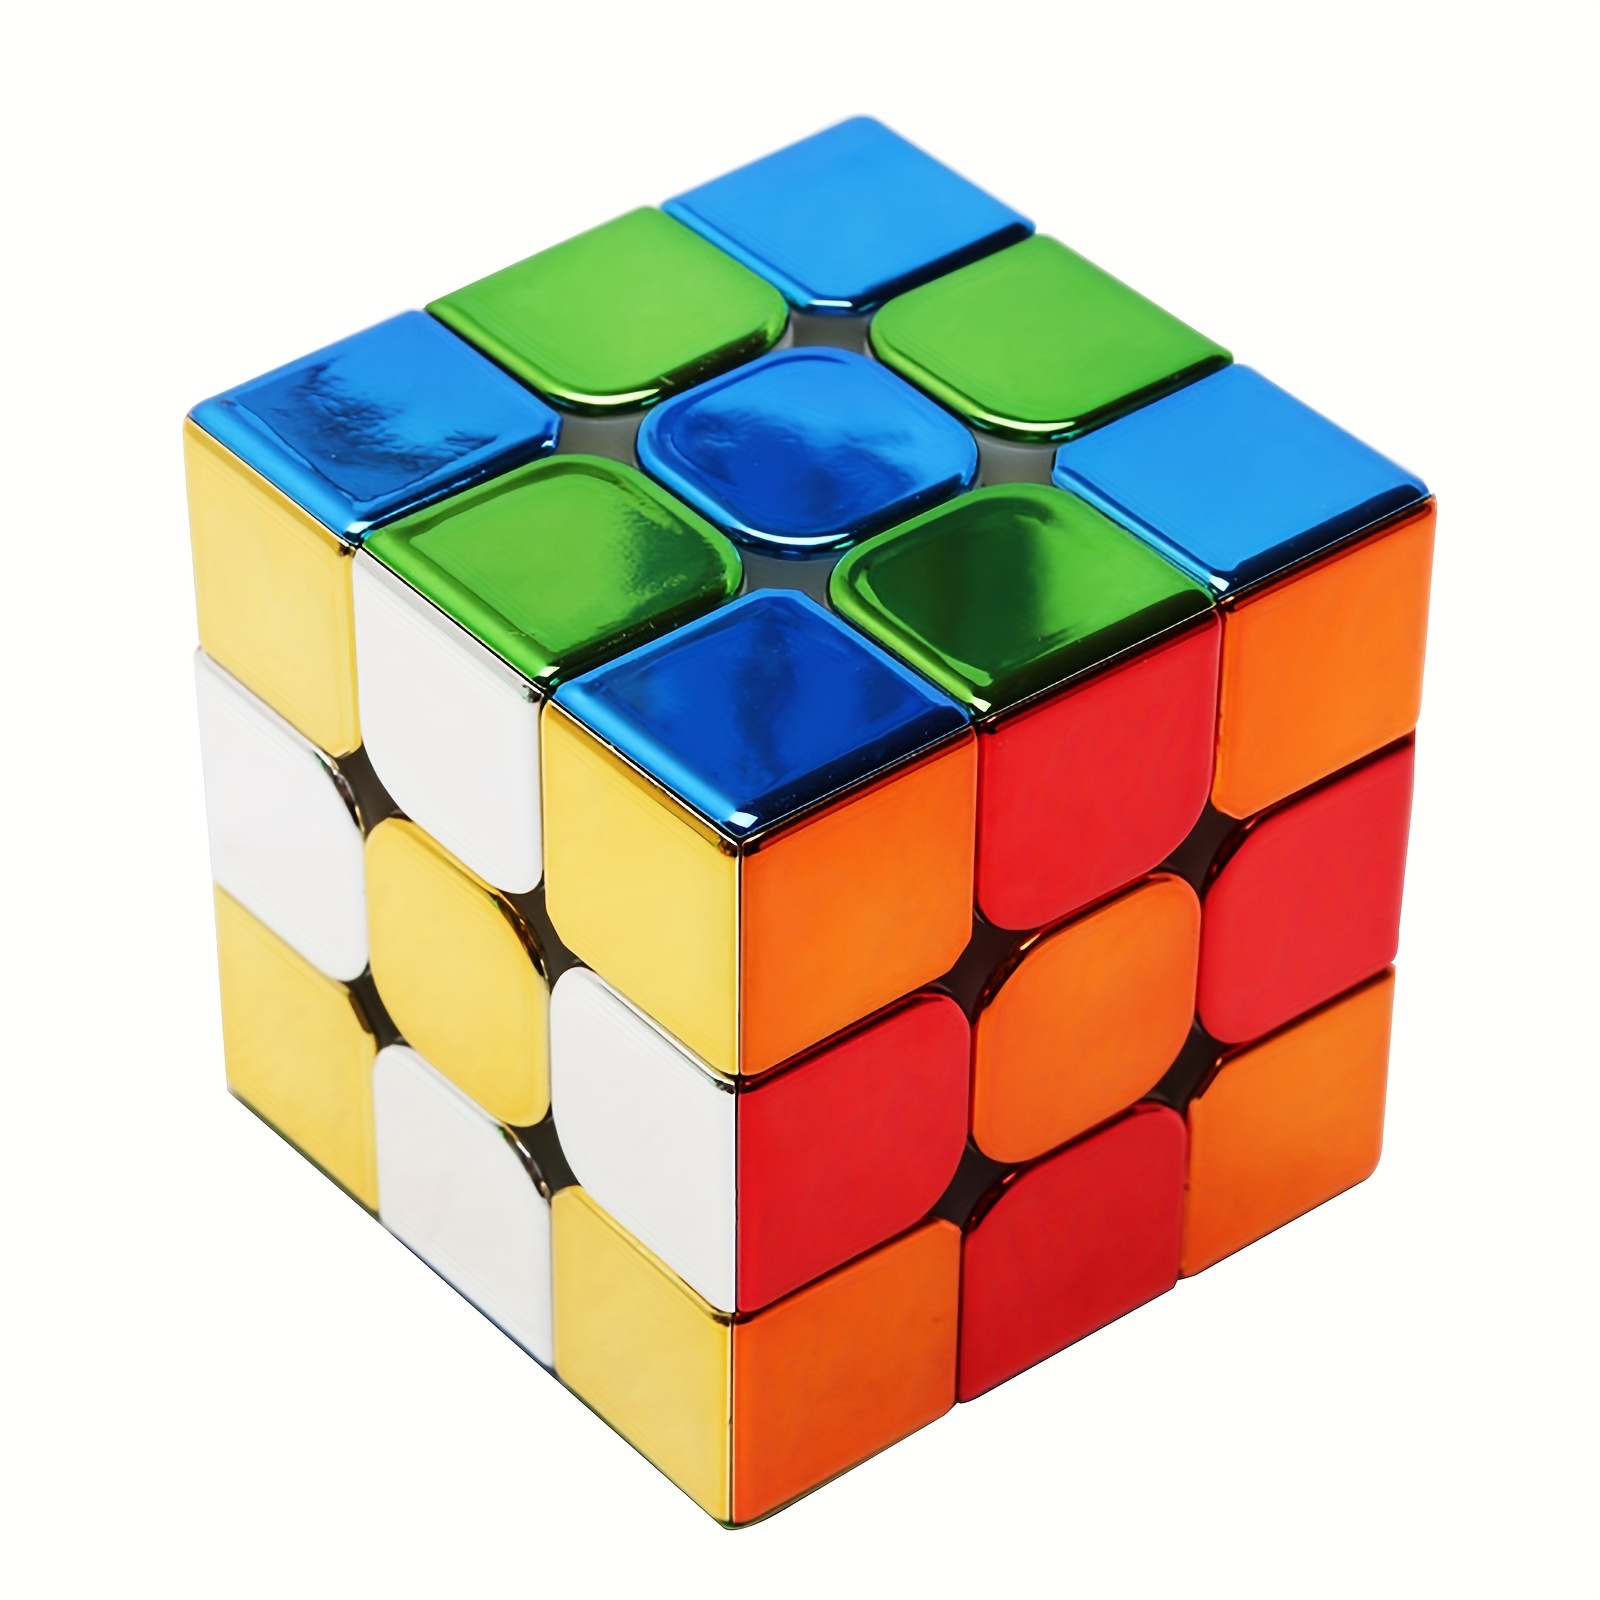 ルービック パズルキューブ 3×3 ミラーキューブ パズルゲーム 競技用 立体 競技 ゲーム パズル ((S